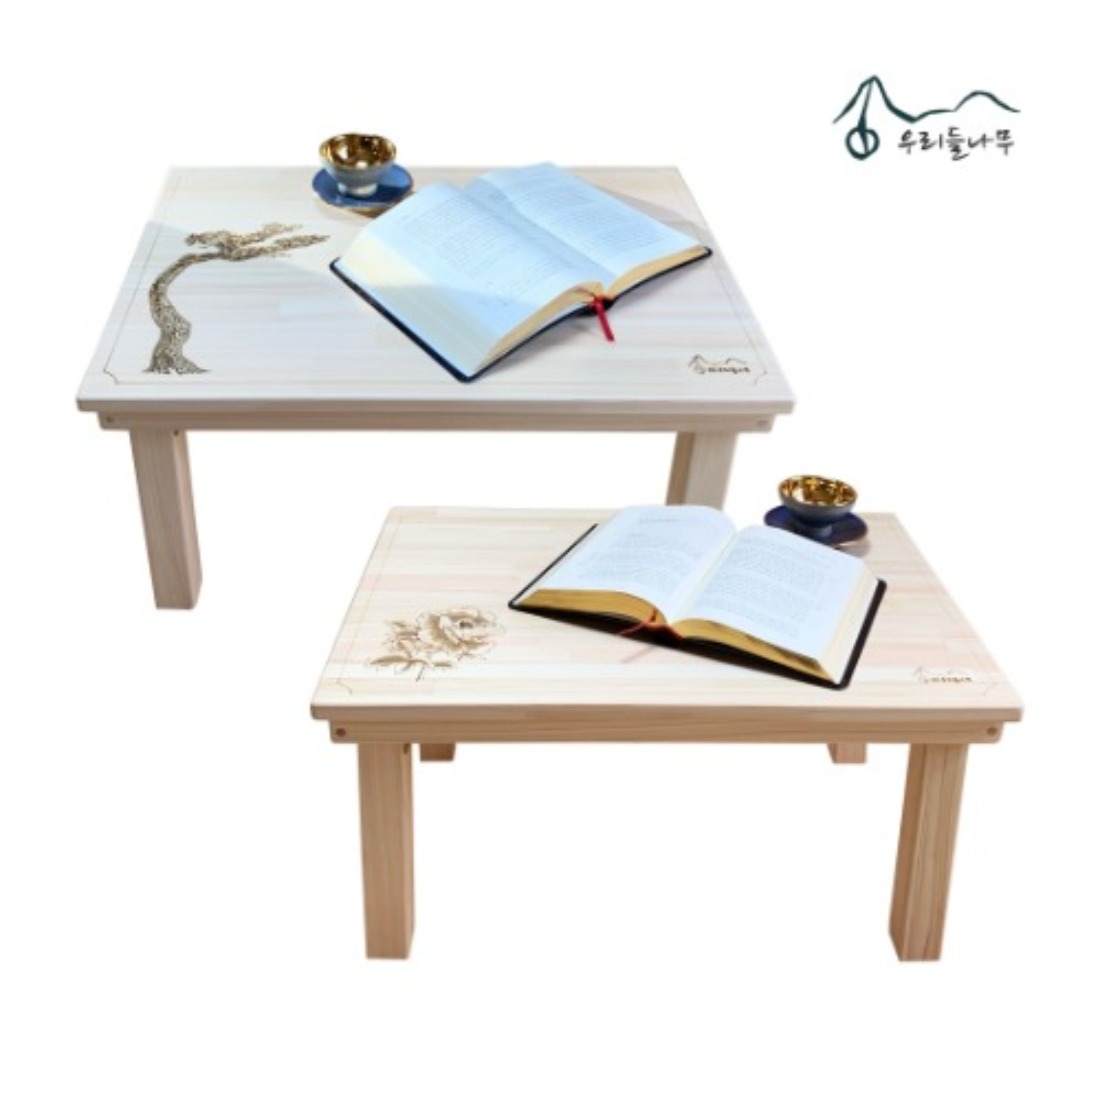 편백 접이식 테이블 (600) 폴딩테이블 밥상 찻상 티테이블 공부상